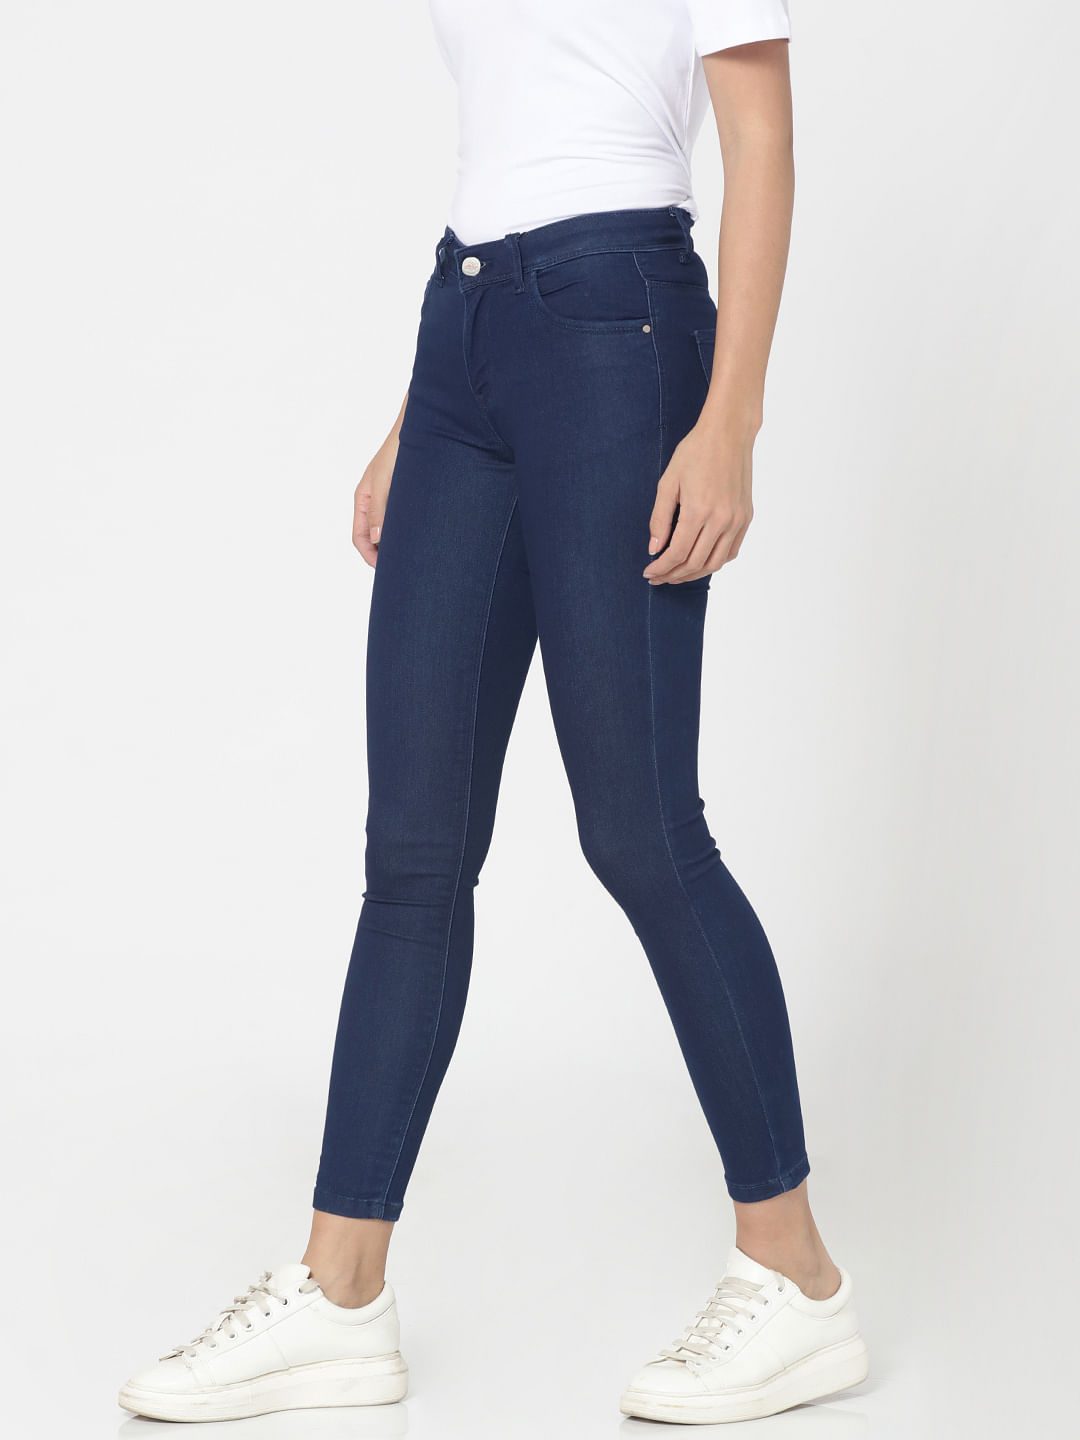 dark blue jeans high waist